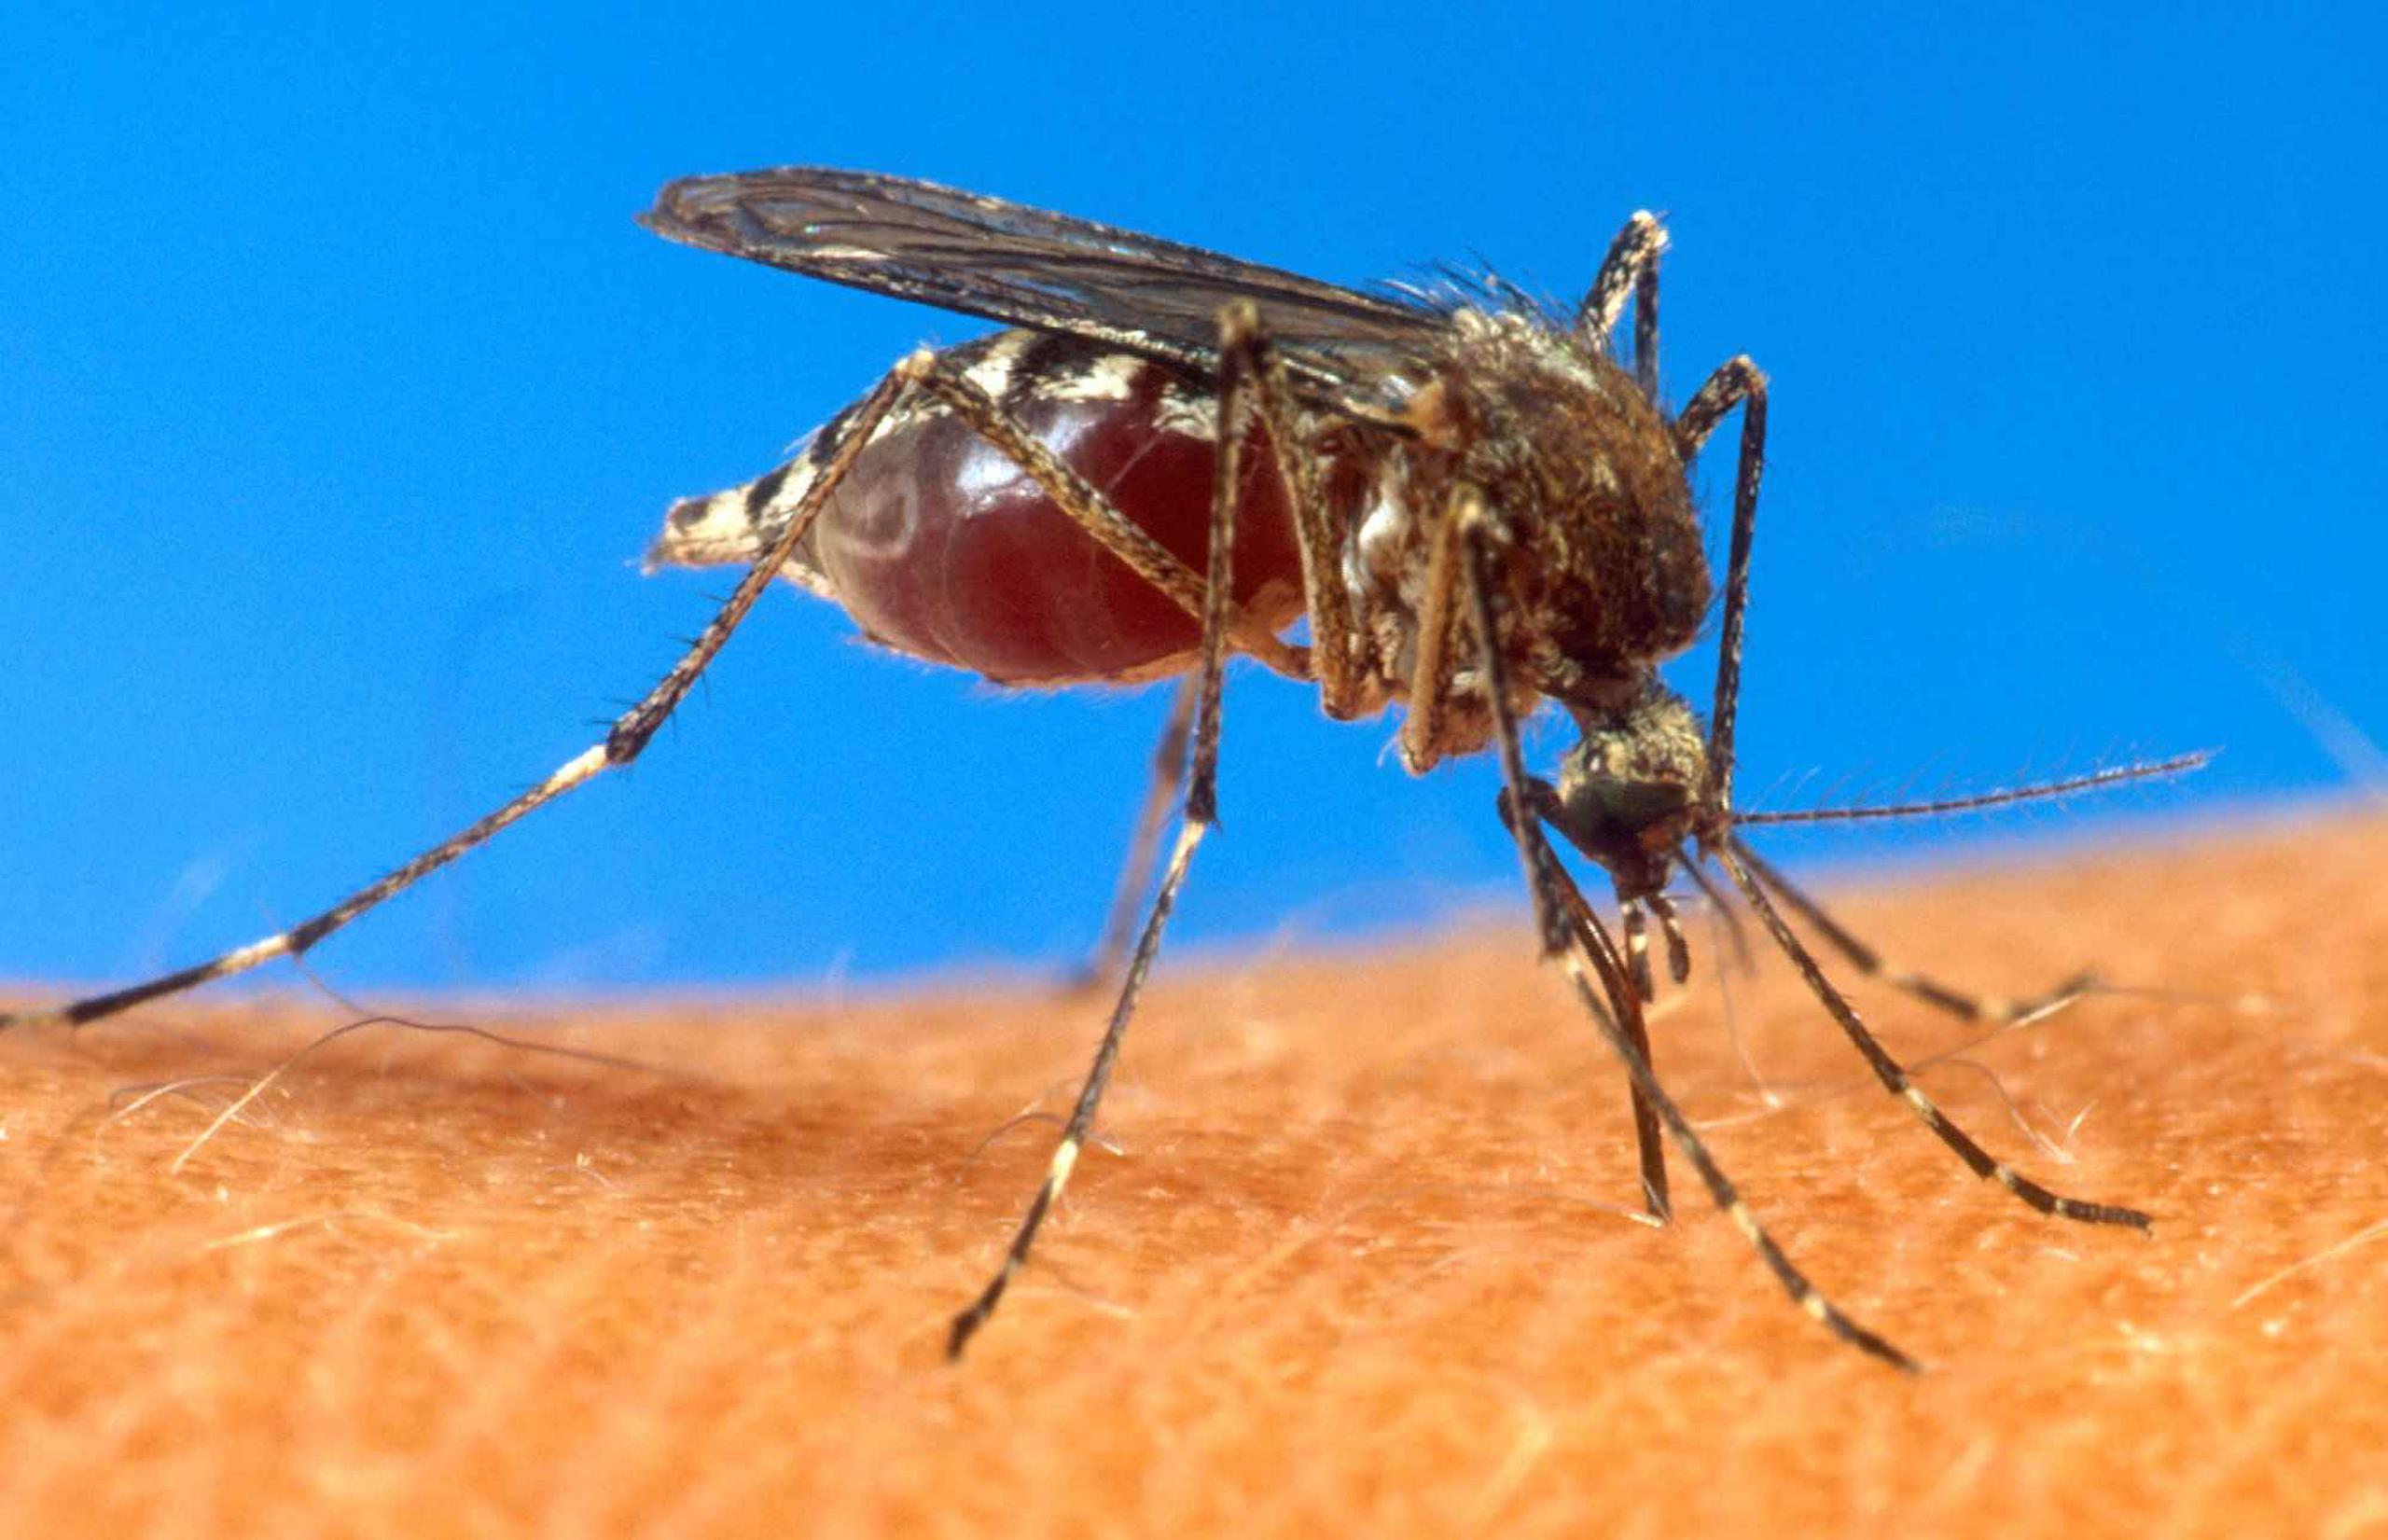 El chikungunya es un virus que se transmite a través de la picada del mosquito aedes aegypti. (GFR MEDIA)